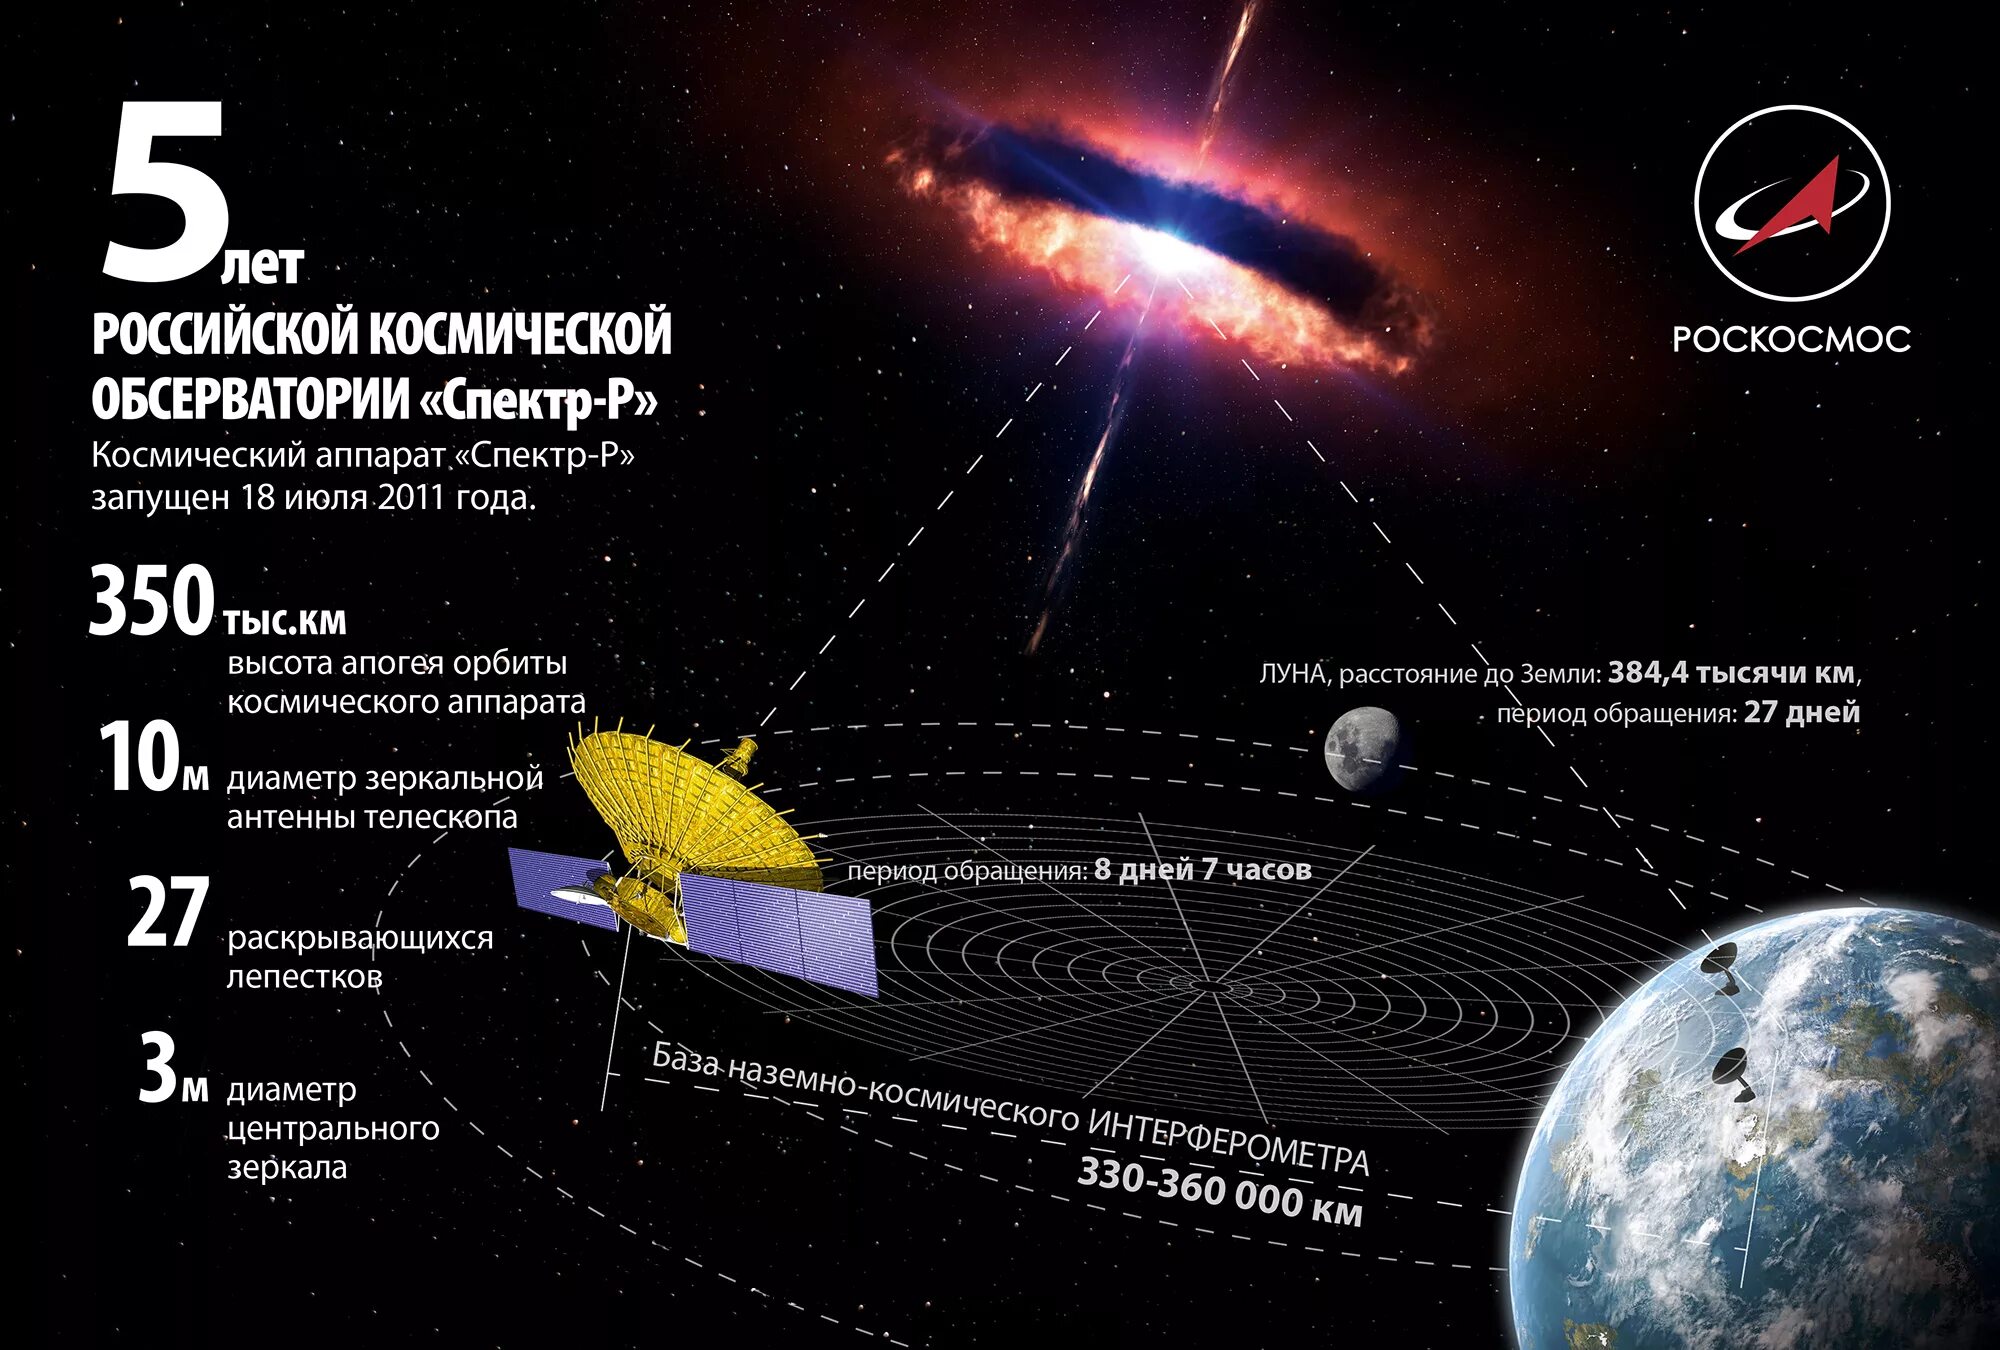 Какой космический объект называют. Космический телескоп Радиоастрон. Космический аппарат спектр-р. Российская Космическая обсерватория Радиоастрон. Спектр-р телескоп.